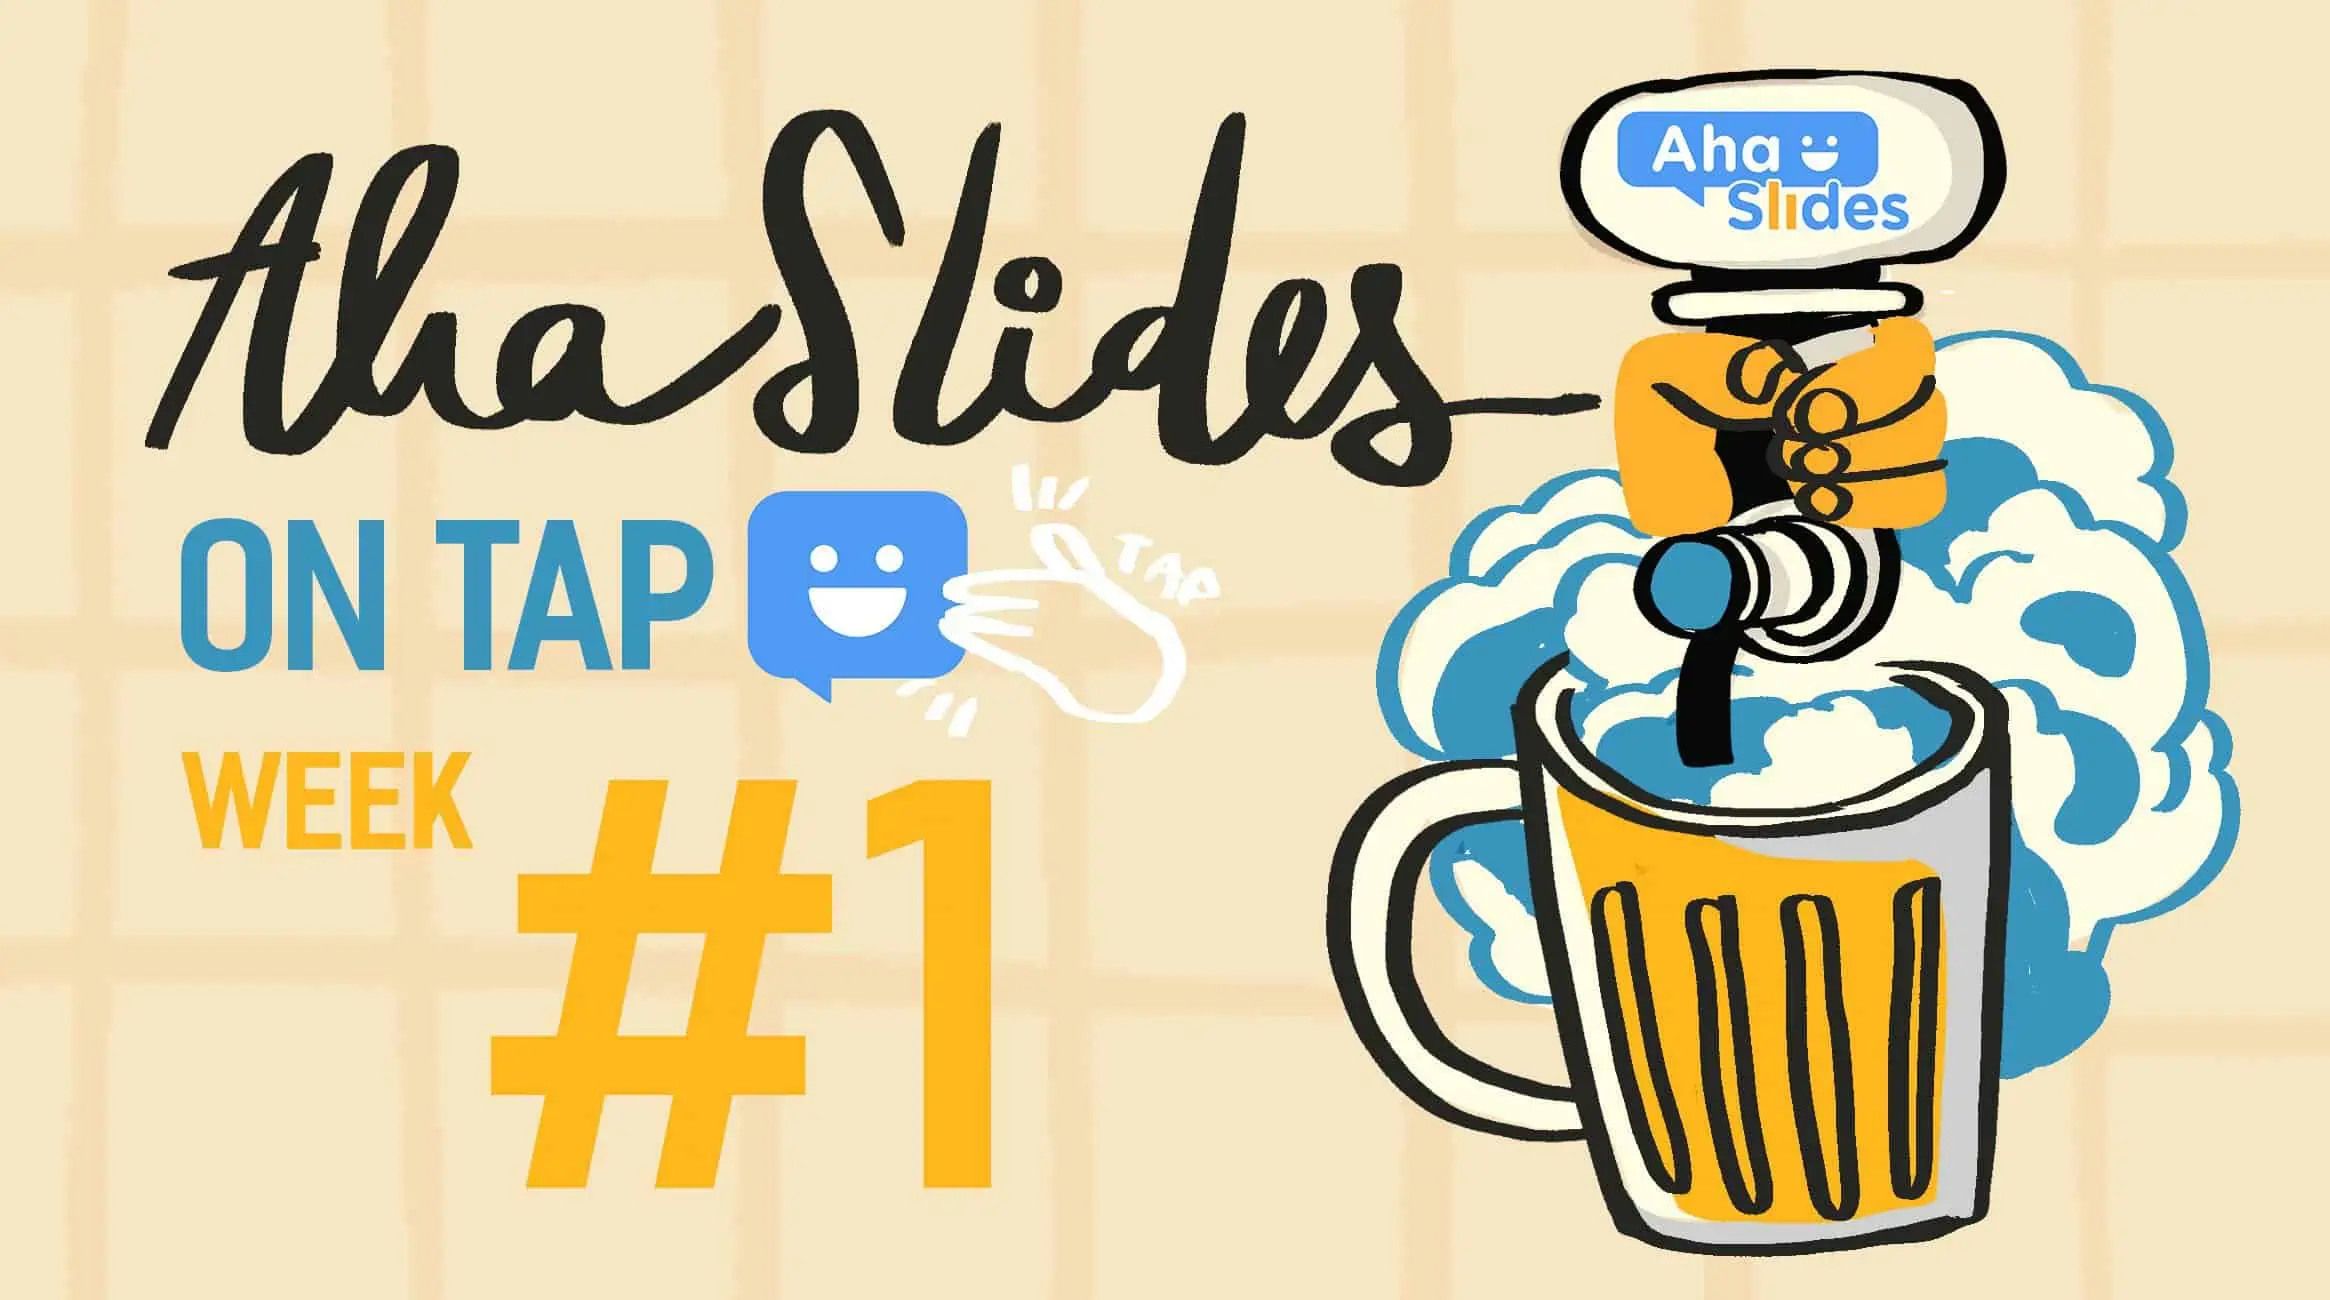 Hauskoja pubivisaa koskevia kysymyksiä ja vastauksia: AhaSlides on Tap #1 (ilmainen lataus!)